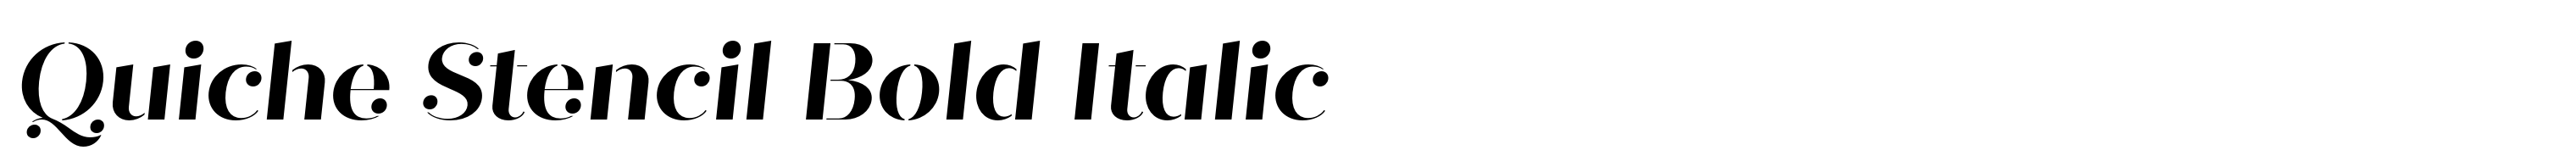 Quiche Stencil Bold Italic